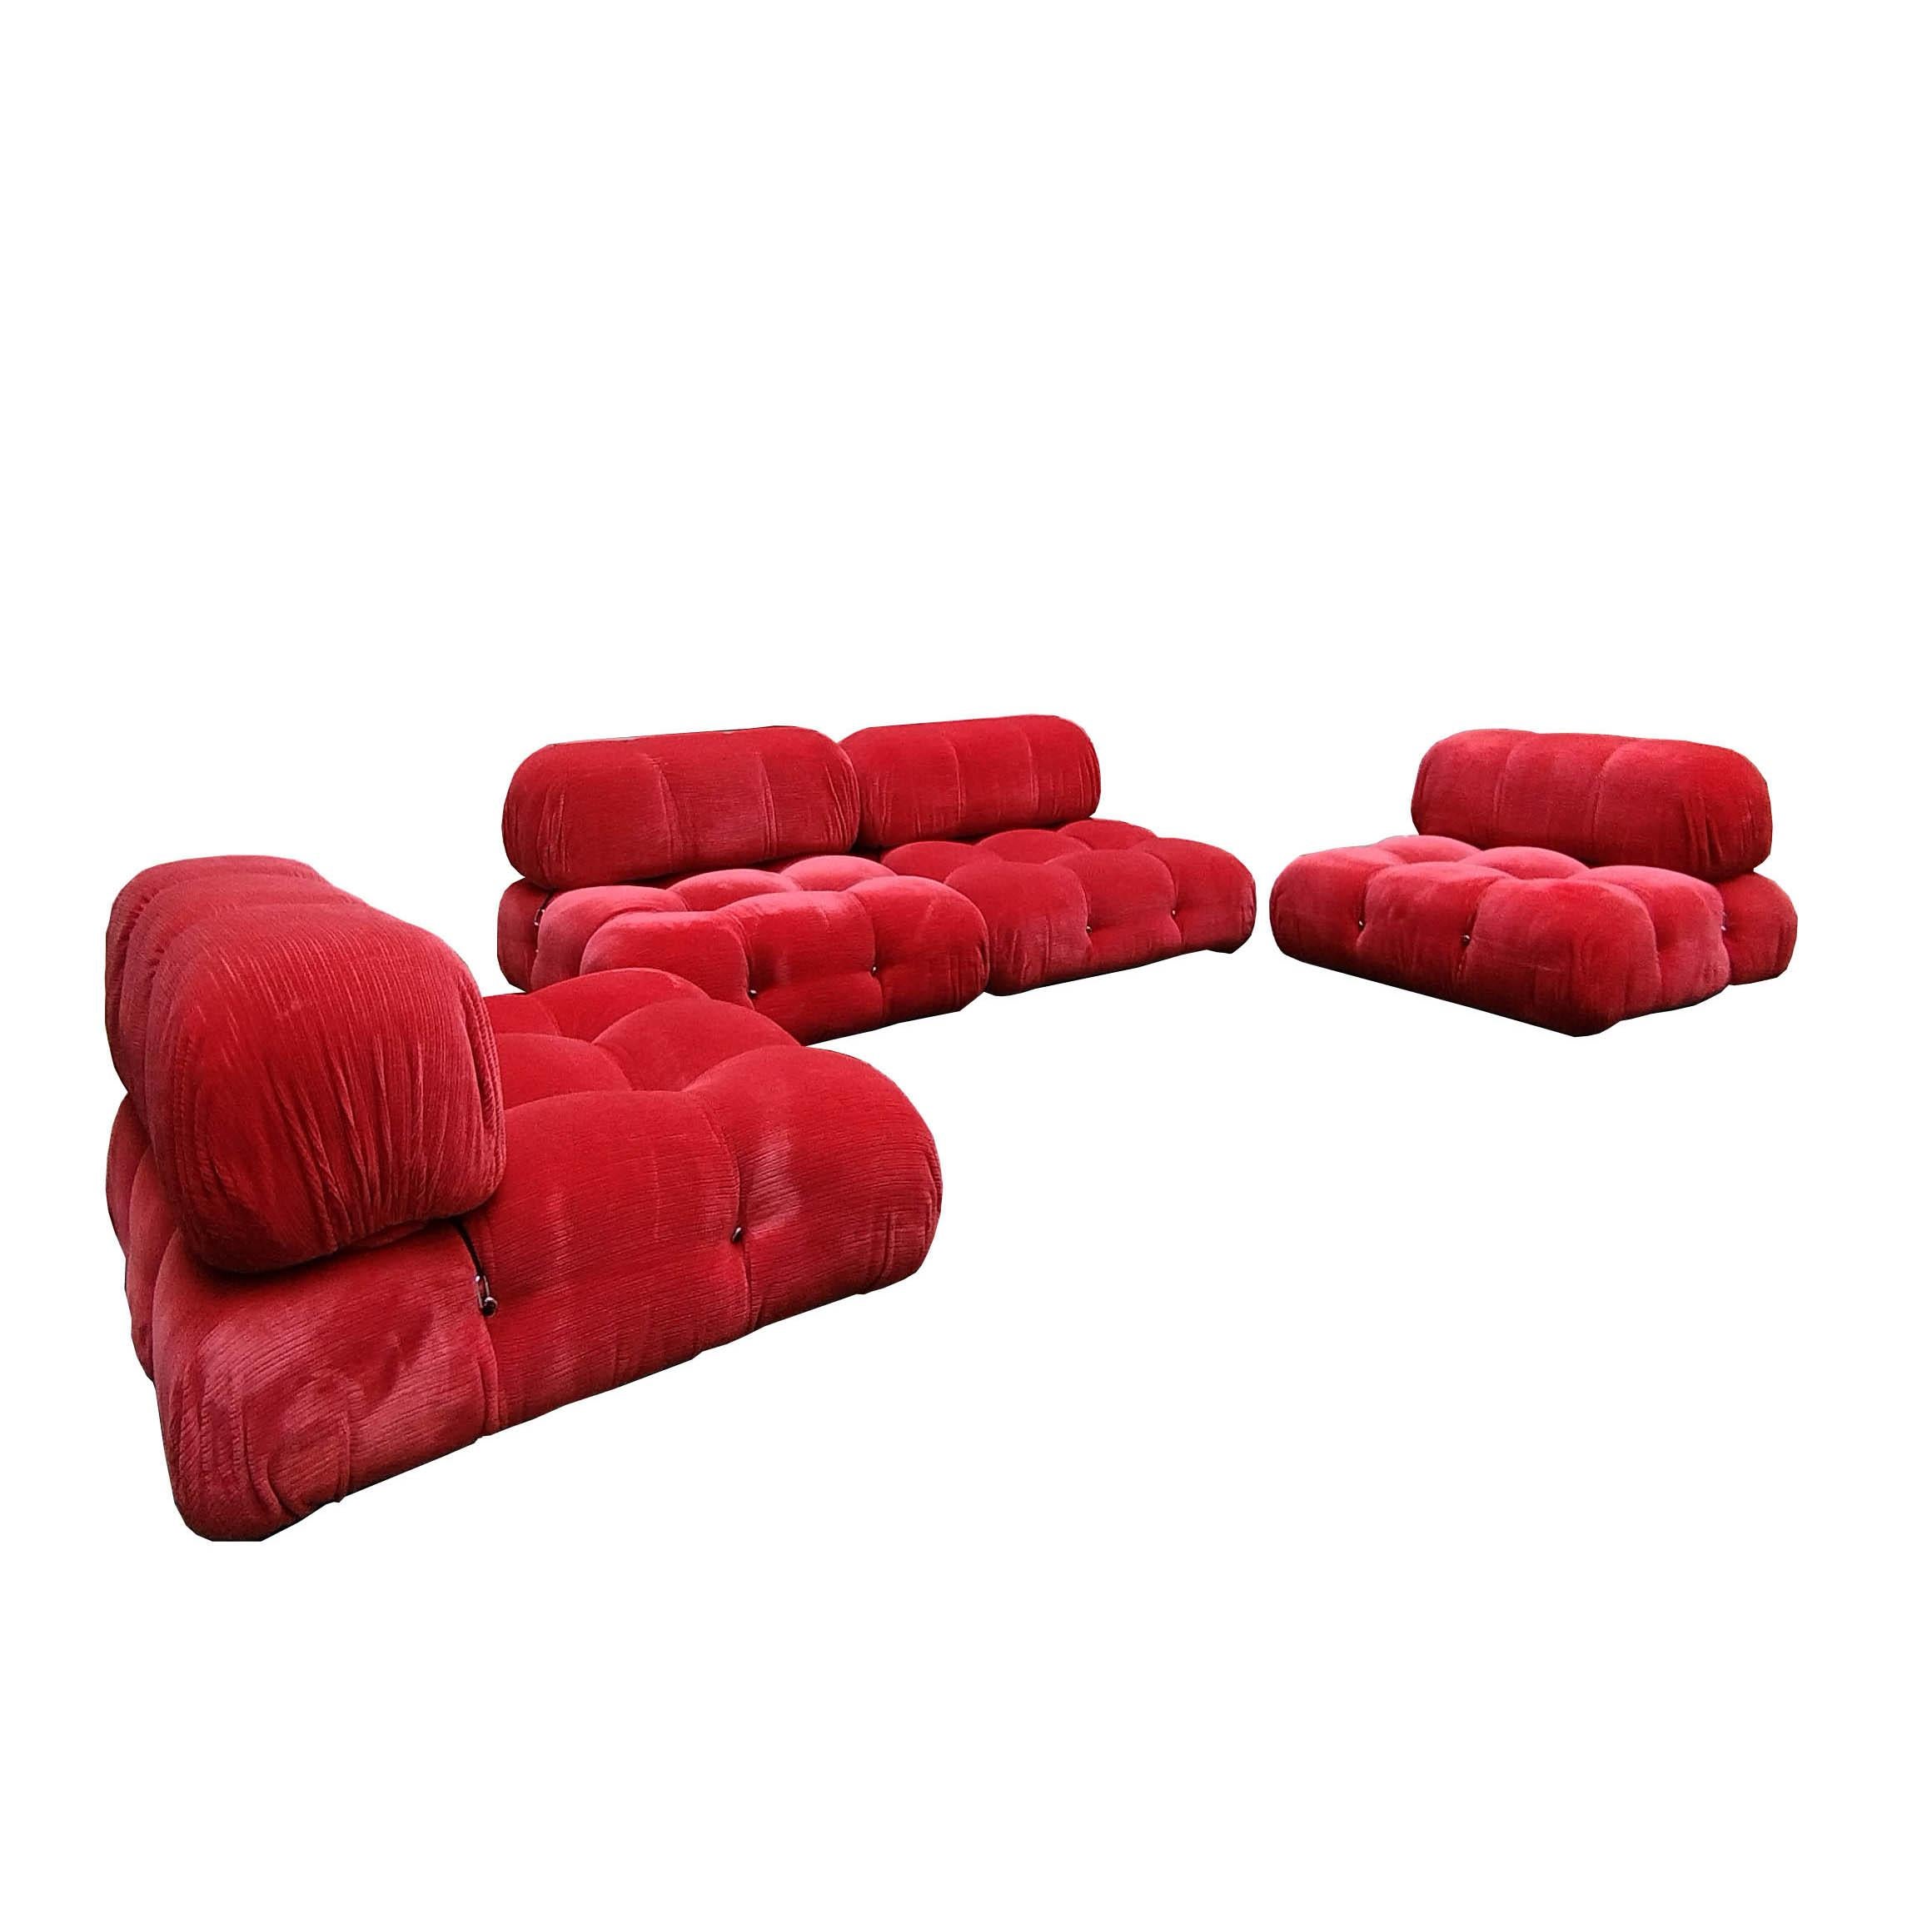 Mario Bellini, grand canapé modulaire 'Cameleonda', revêtement en tissu rouge, Italie, conçu en 1971

Les éléments modulaires de ce canapé peuvent être utilisés librement et séparément les uns des autres. Les dossiers et les accoudoirs sont équipés